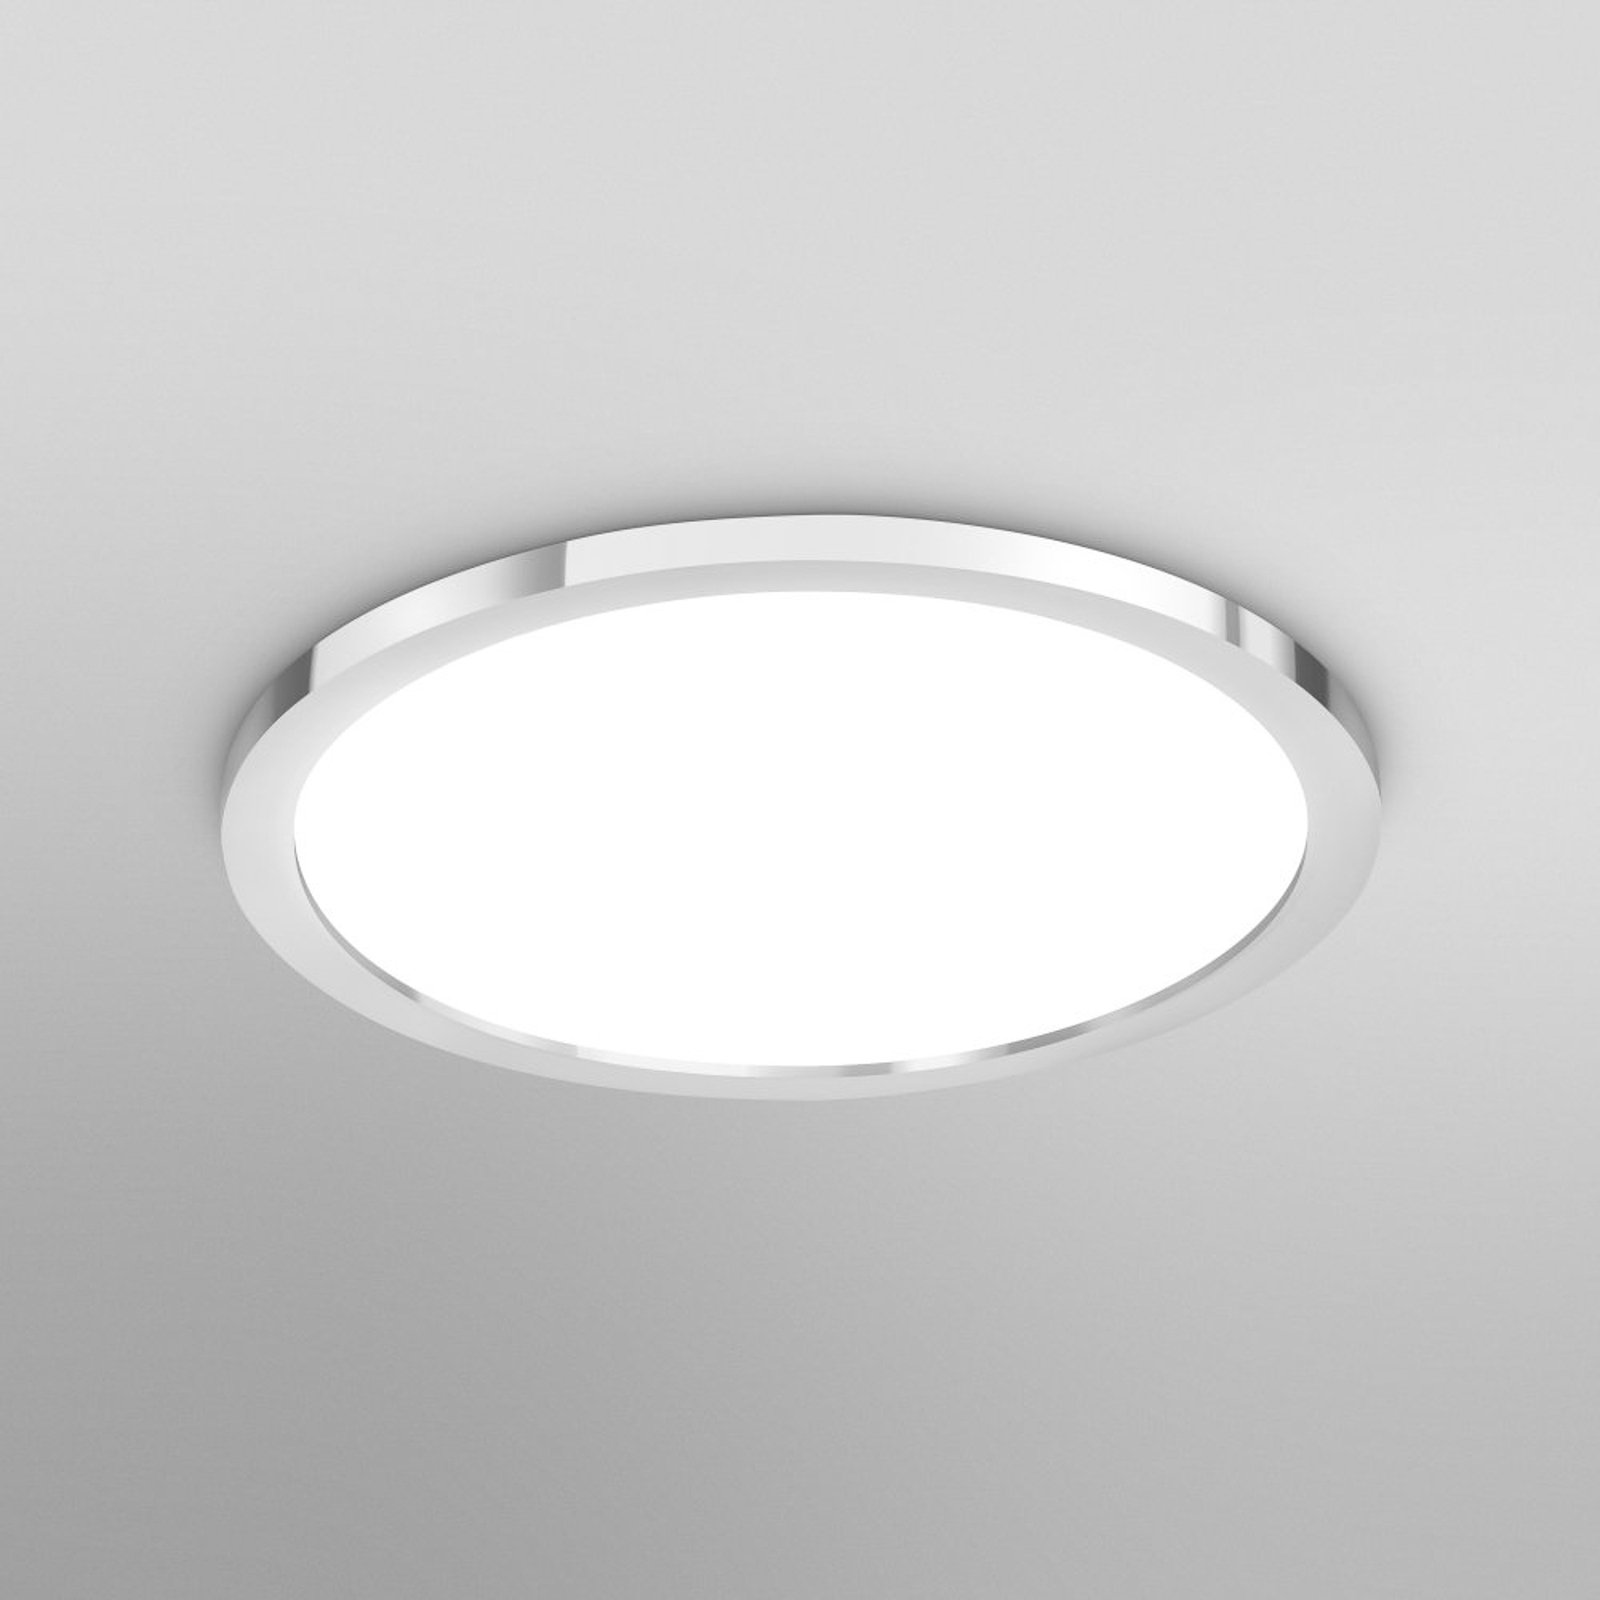 LEDVANCE SMART+ WiFi Orbis Disc, stříbrná, Ø 30 cm